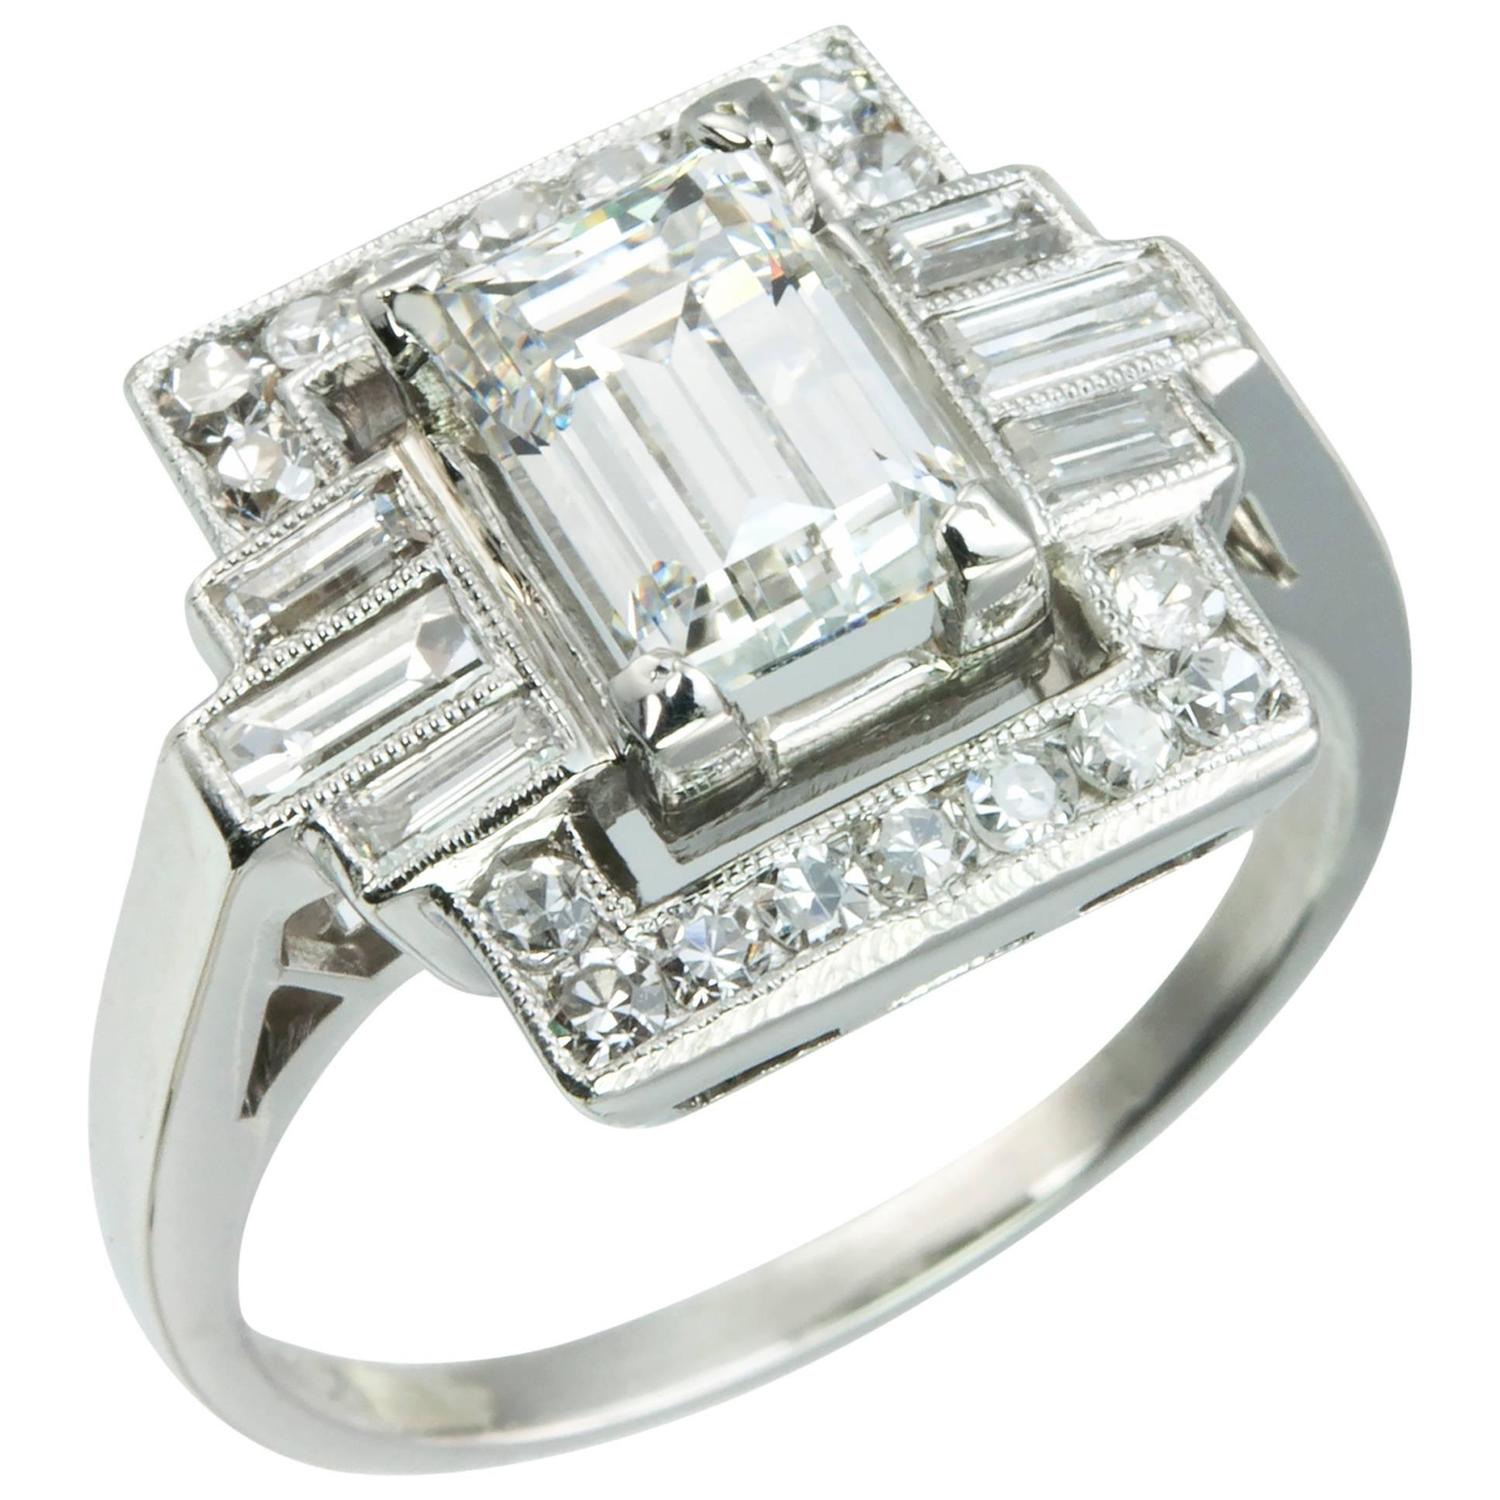 Art Deco 1.37 Carat Emerald Cut Diamond Platinum Ring at